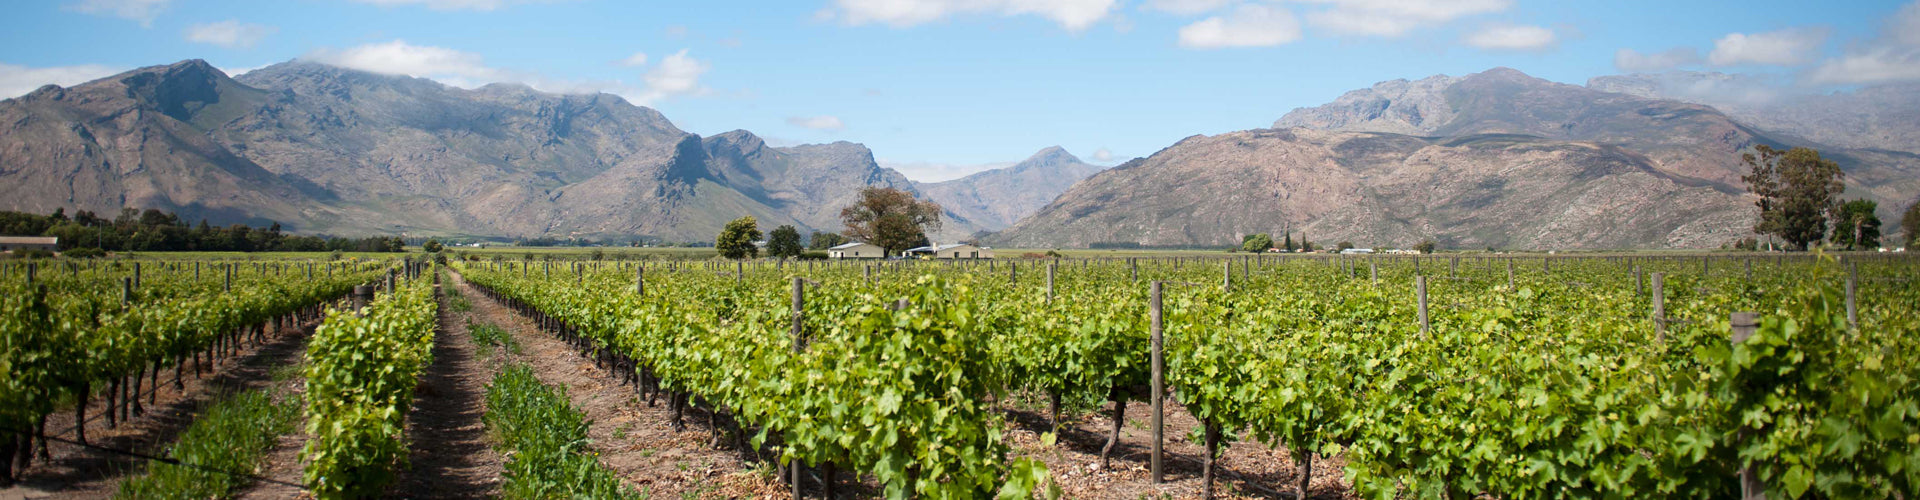 Breedekloof Vineyard in South Africa